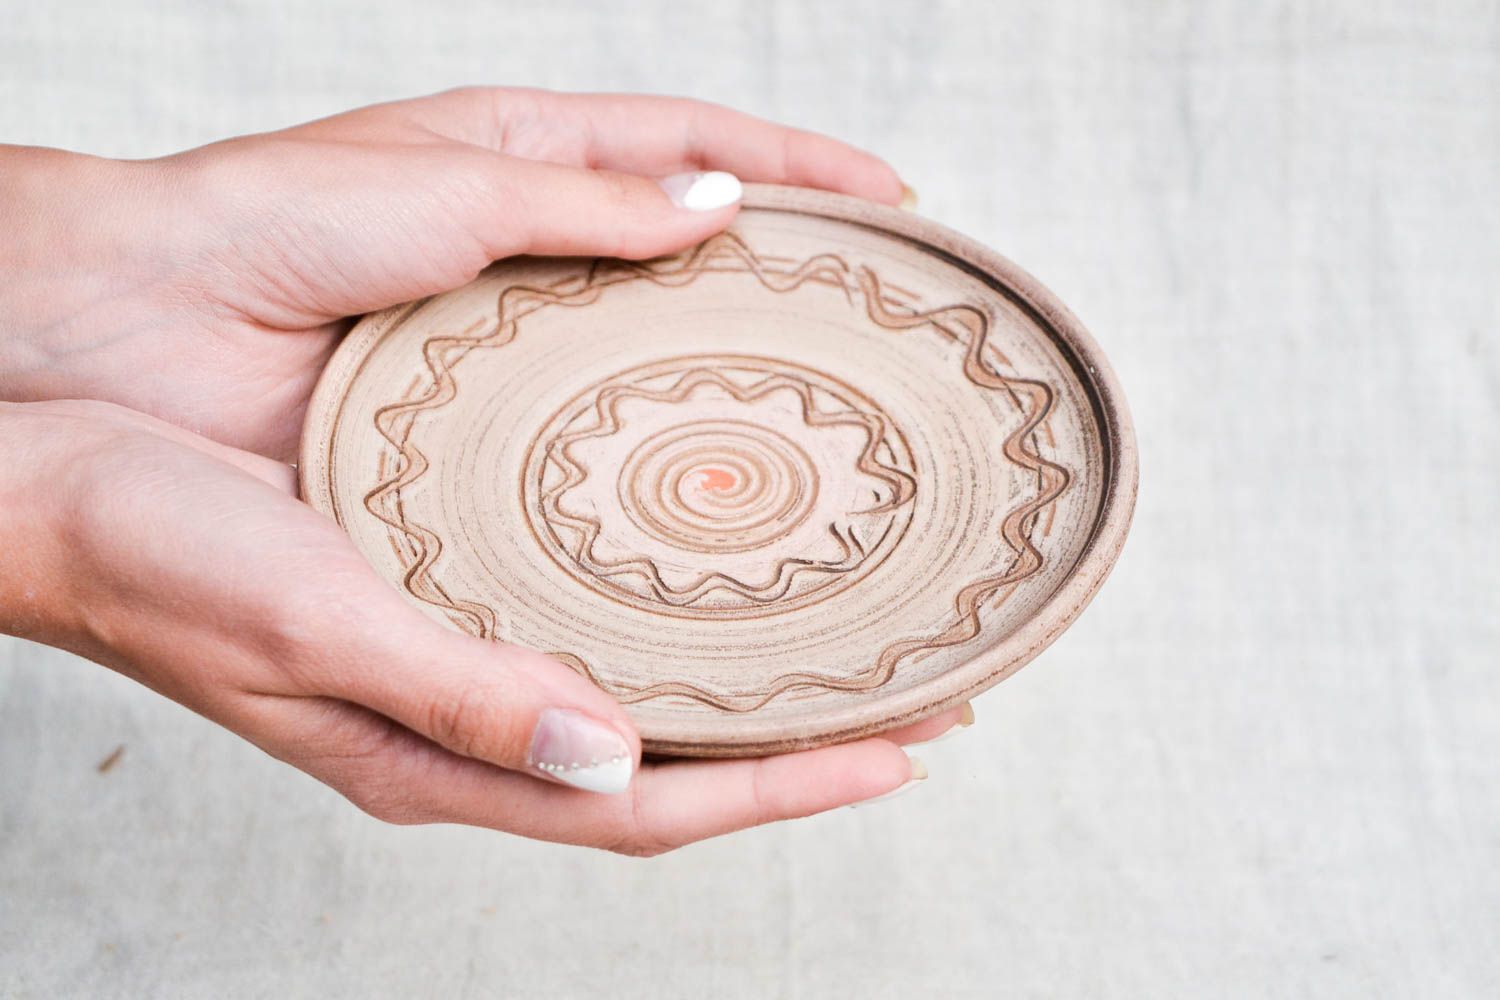 Расписная тарелка глиняная посуда хенд мейд керамическая тарелка авторская фото 2